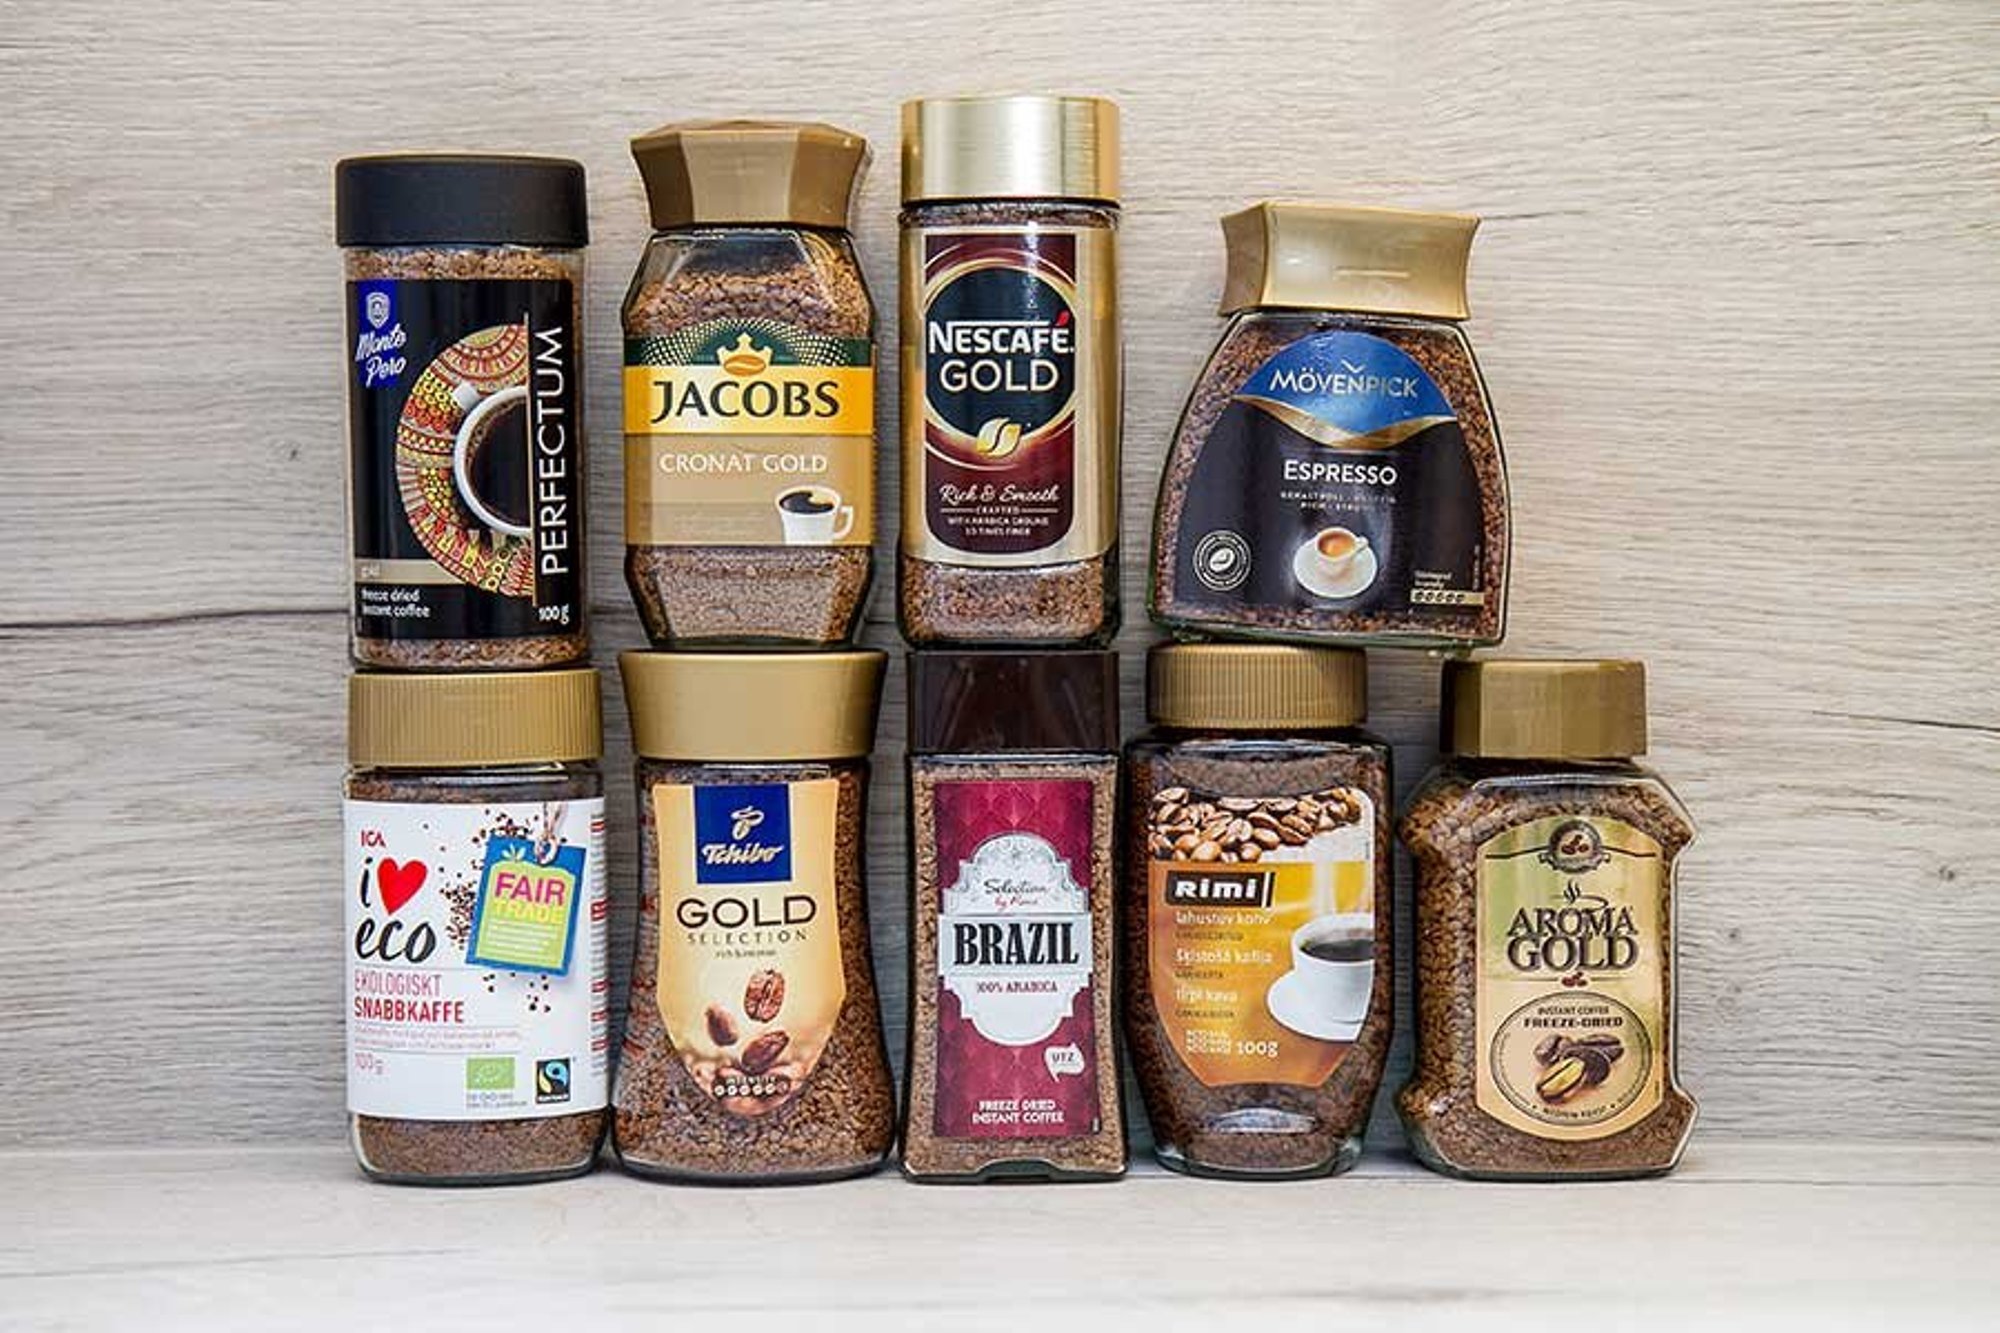 Рейтинг кофе в россии по качеству. Ассортимент кофе. Кофе бренды. Кофе растворимый. Самые известные марки кофе.